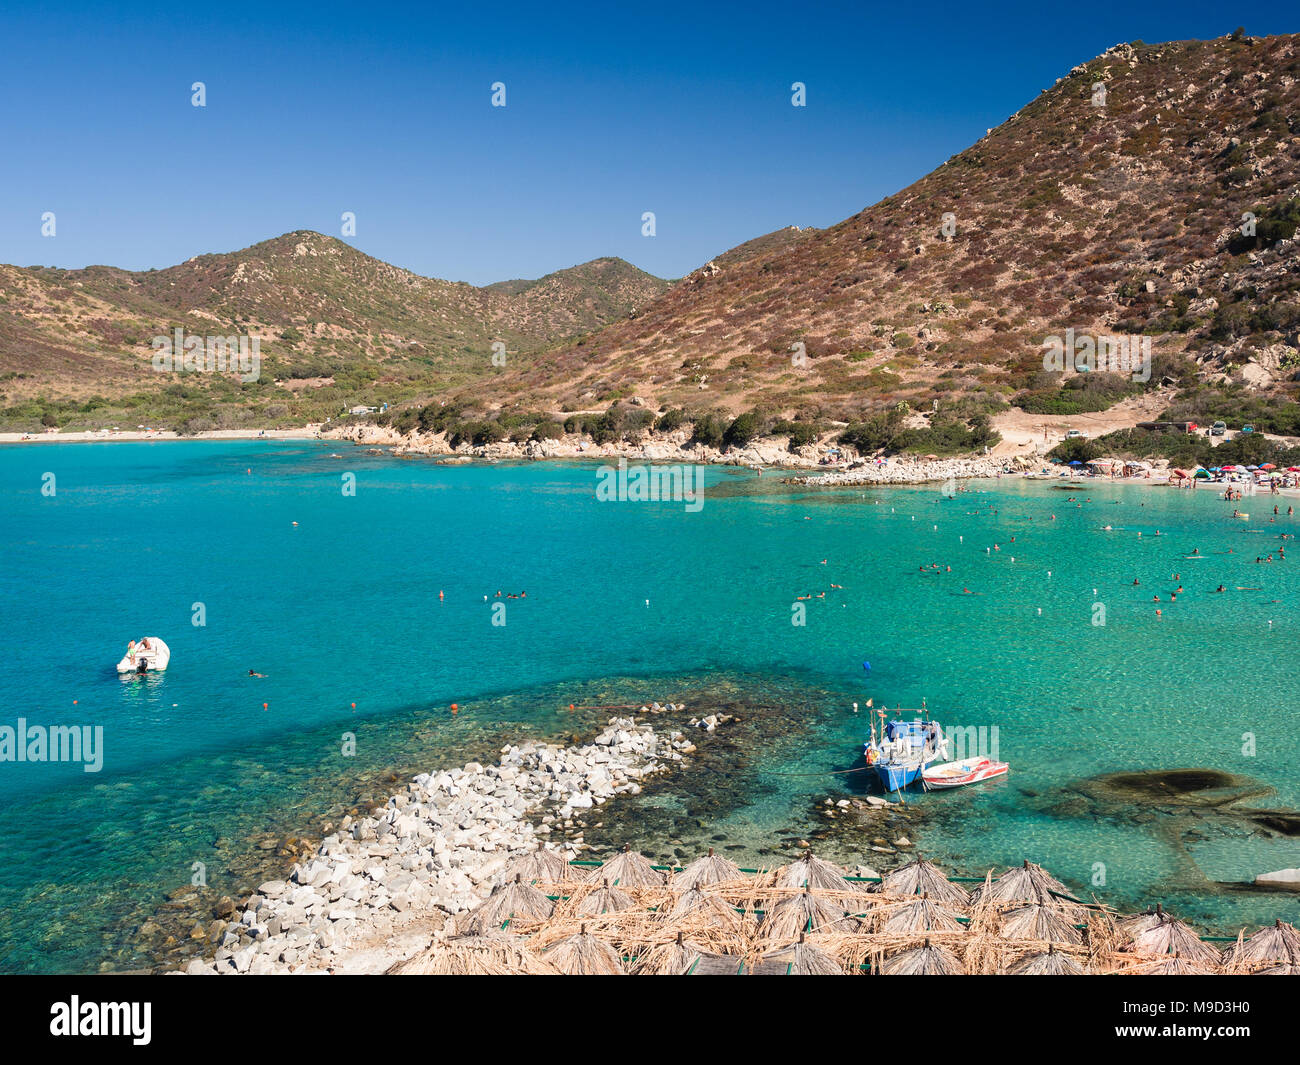 Una delle meravigliose ed incontaminate spiagge dell'isola di Sardegna, Italia. Foto Stock